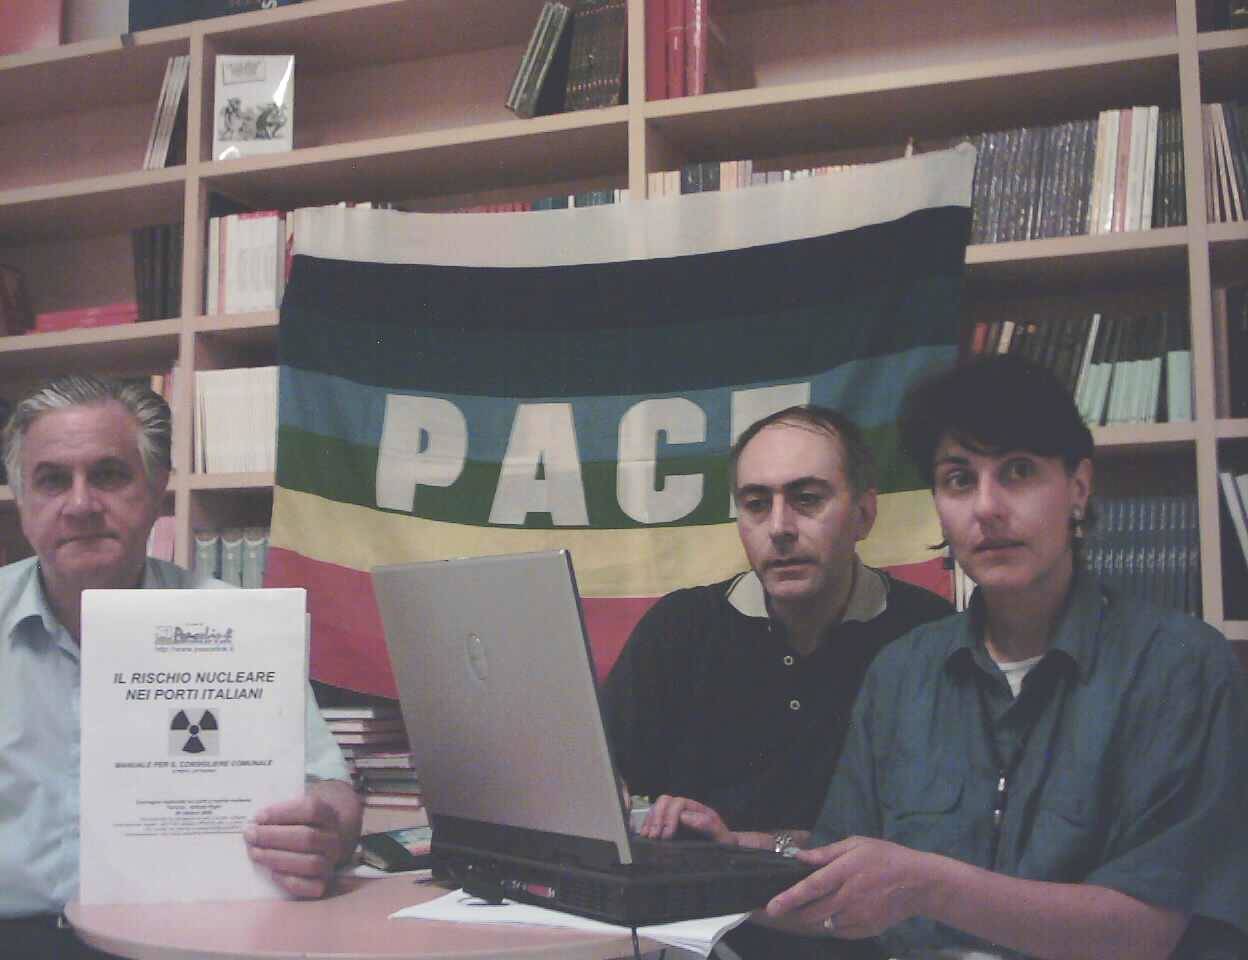 La conferenza stampa del 16 giugno 2005 a Taranto. Da sinistra Giovanni Matichecchia, Alessandro Marescotti e Marinella Marescotti